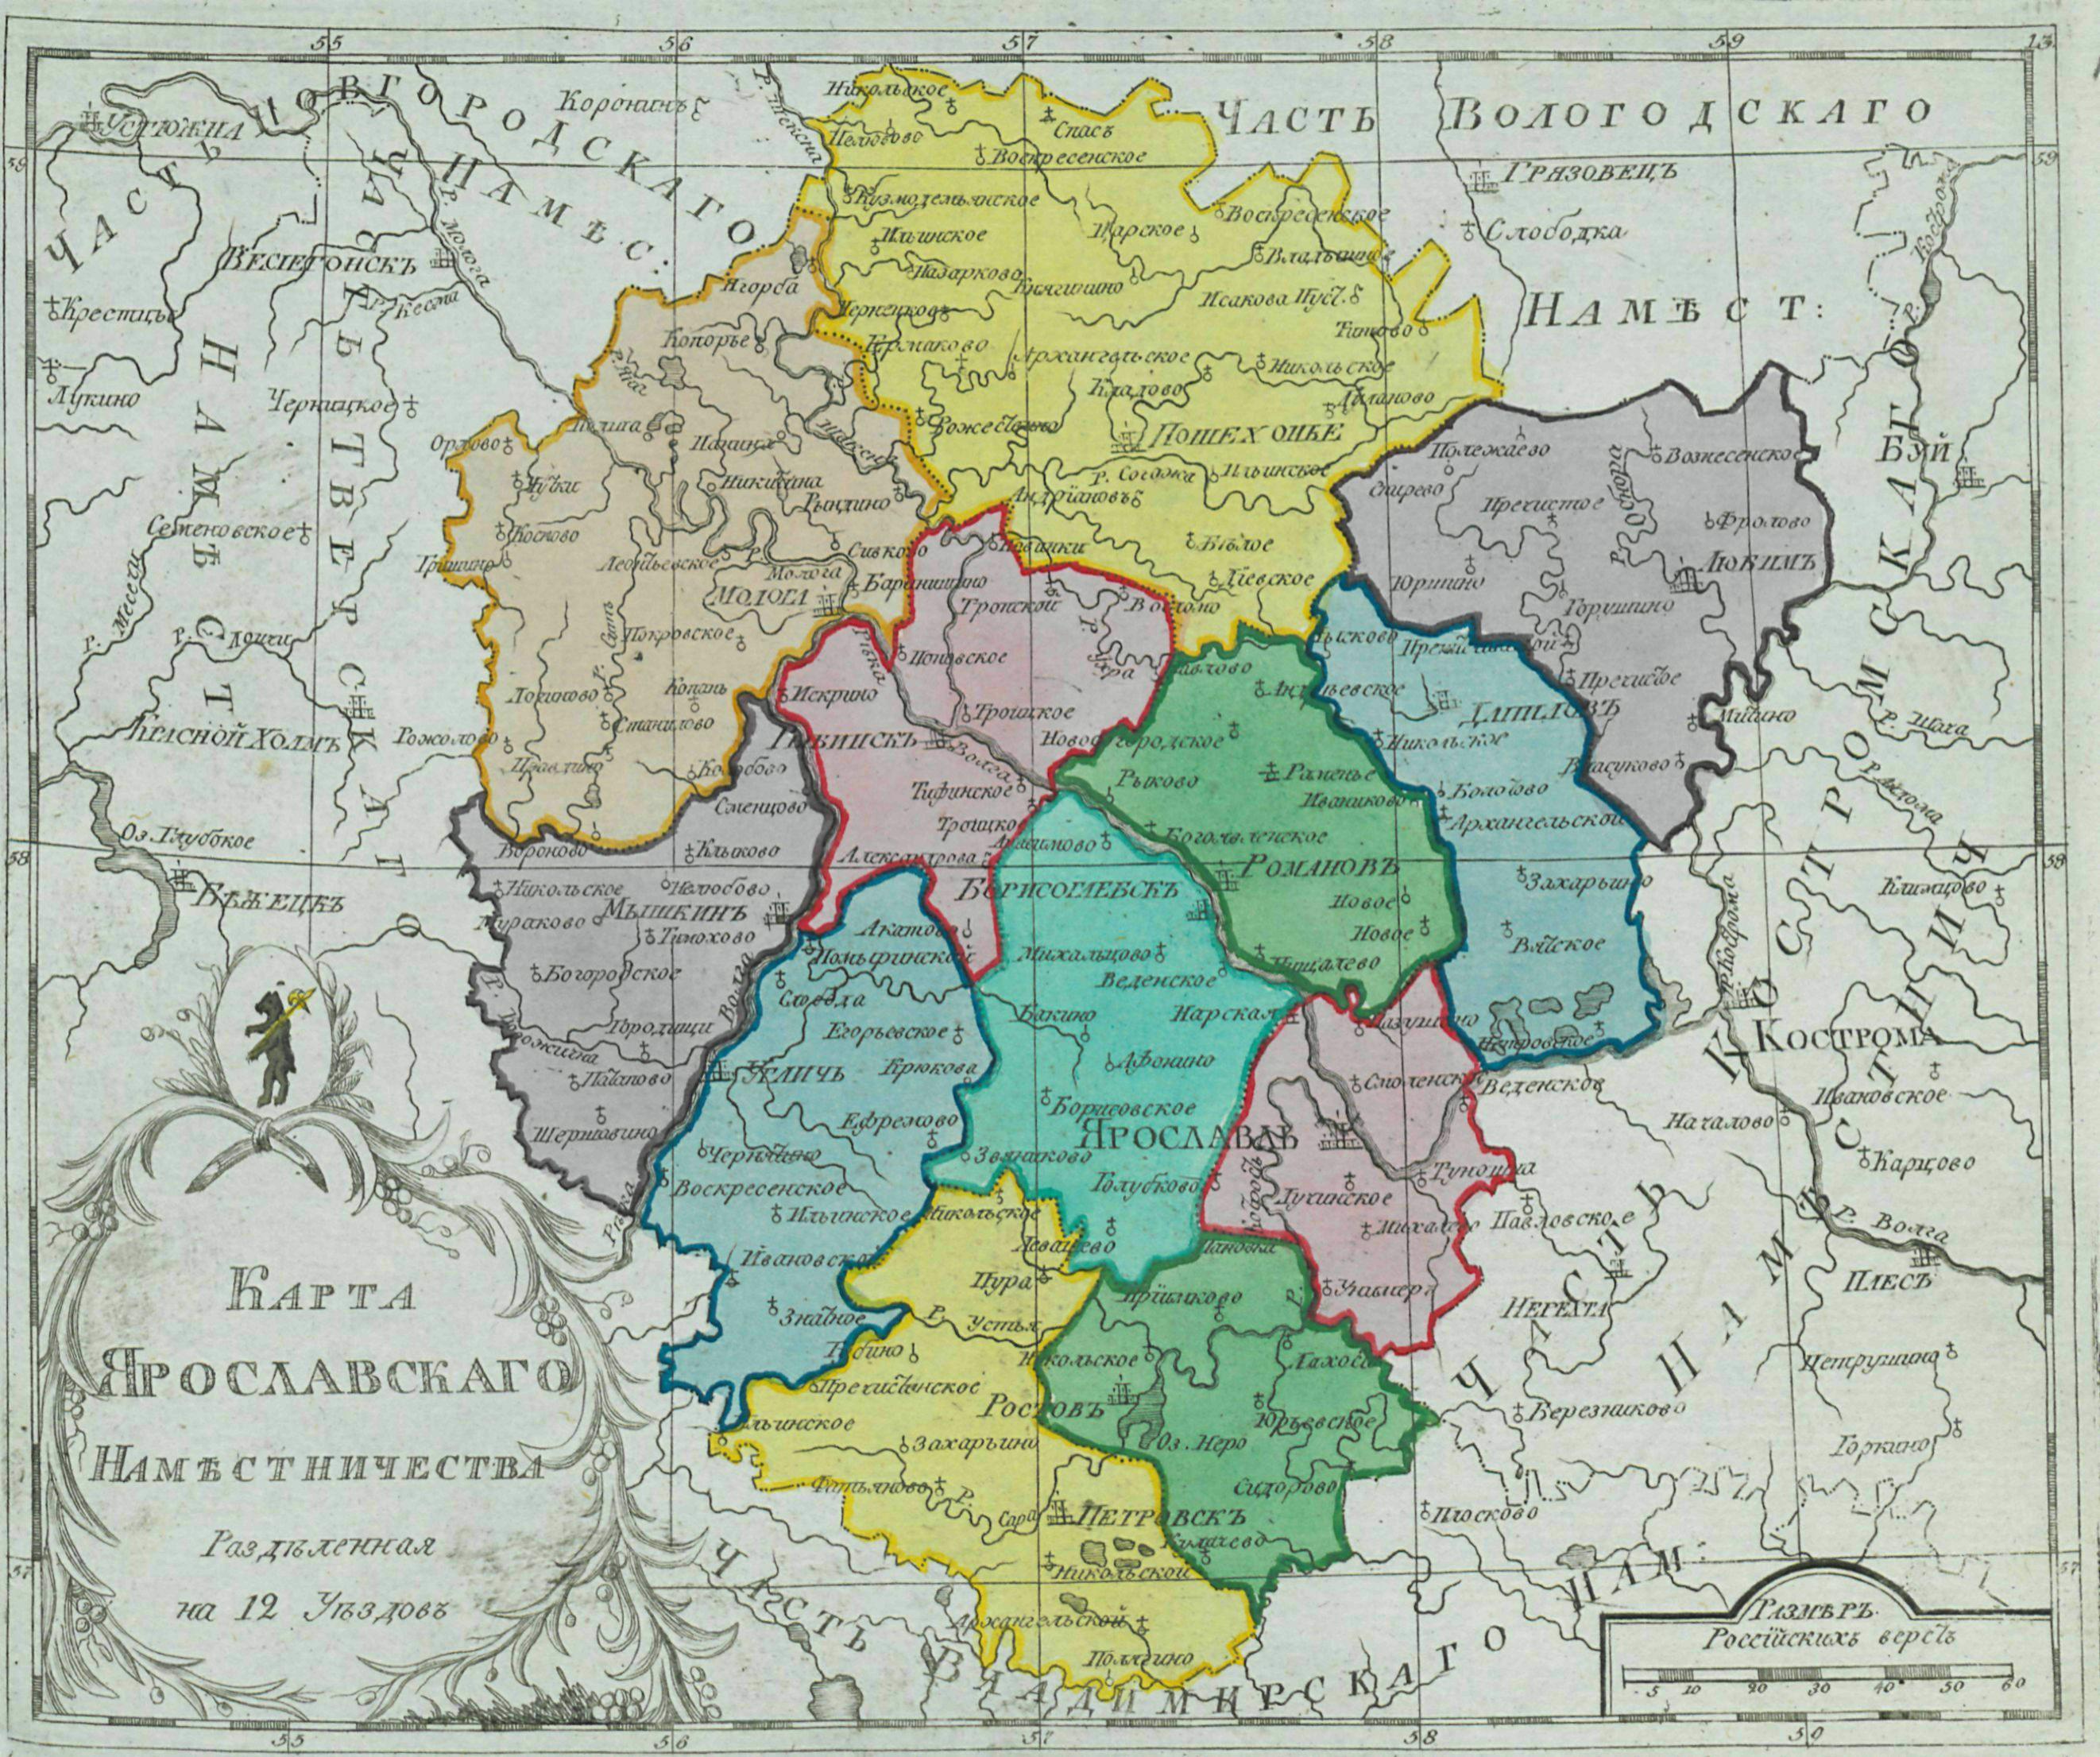 Курсовая работа: Ярославская губерния в 1905 году